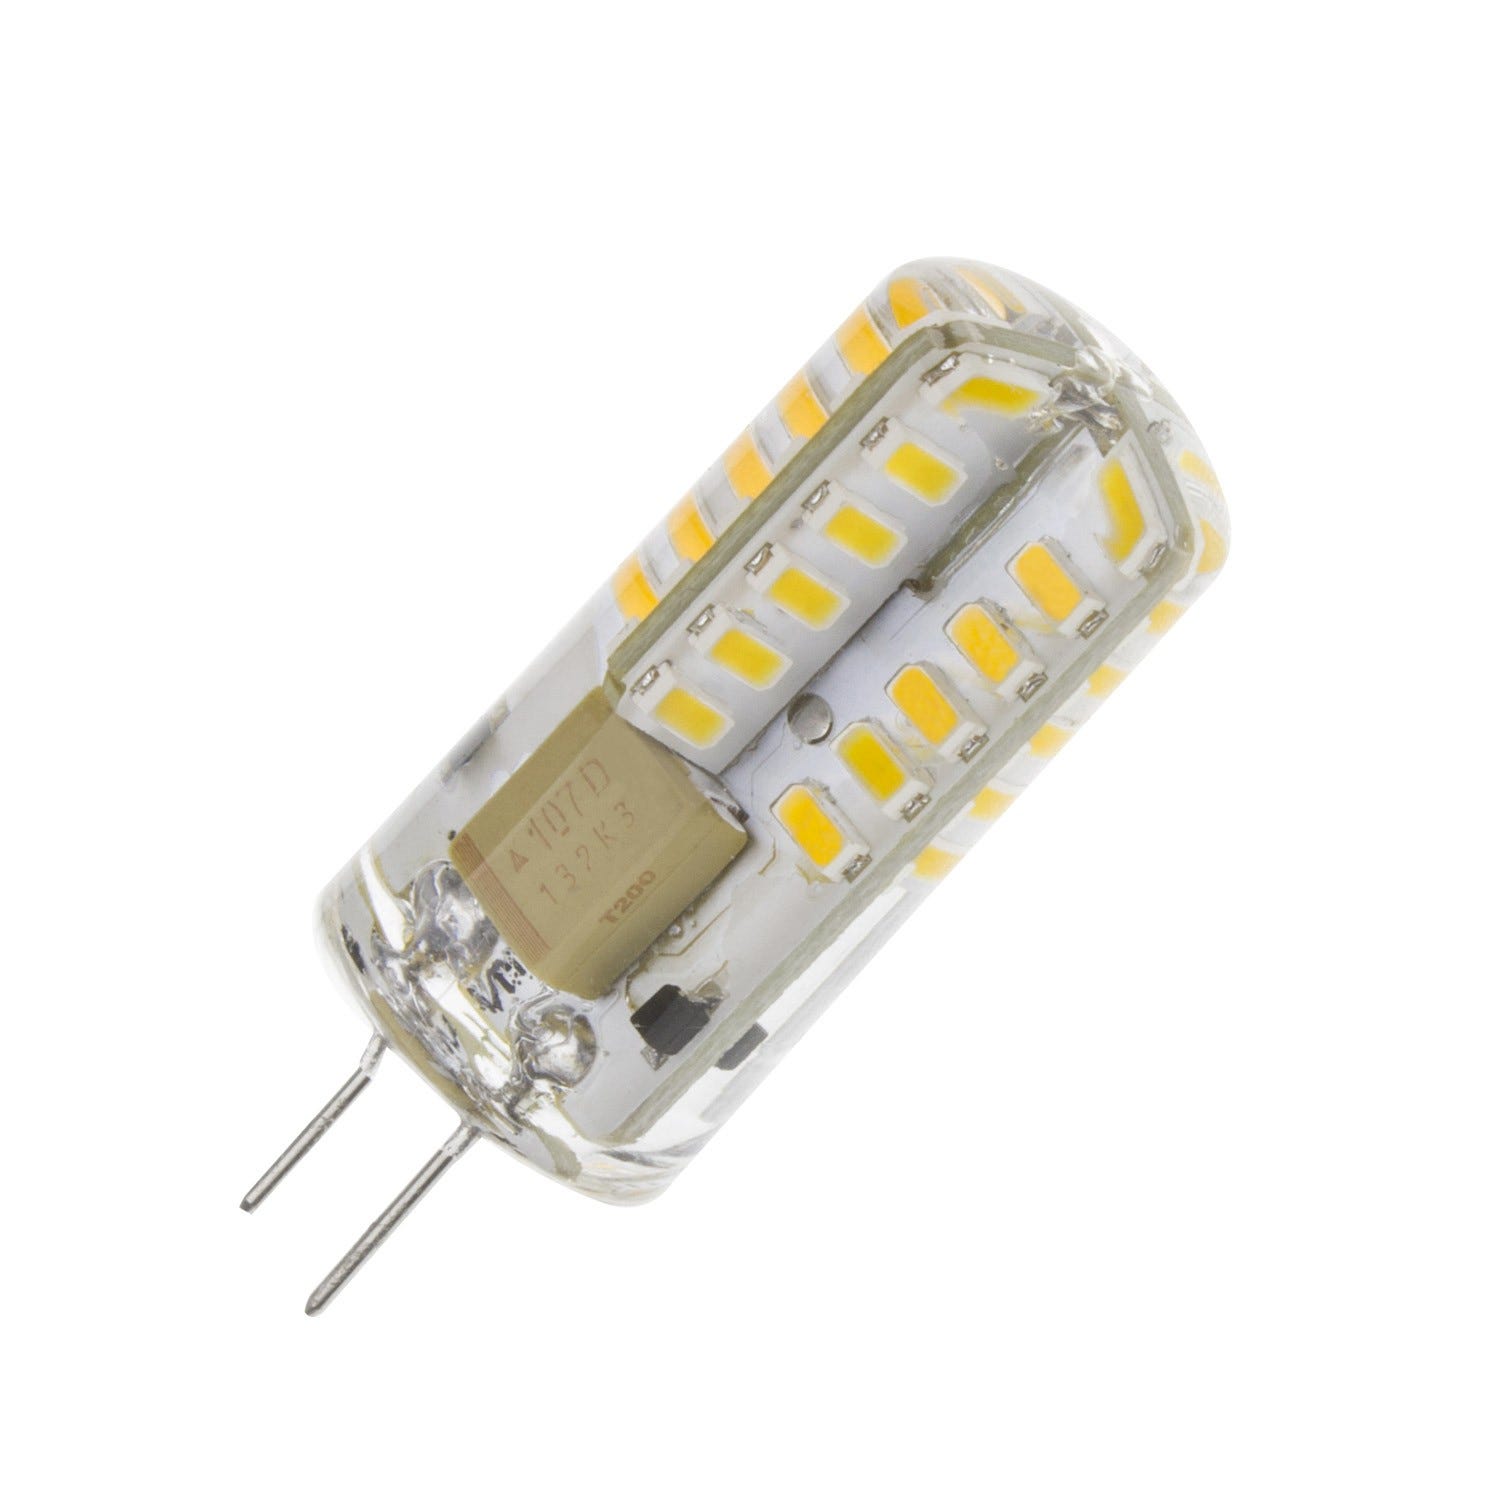 Ampoule LED G4 2W 140 Lm blanc chaud / pce